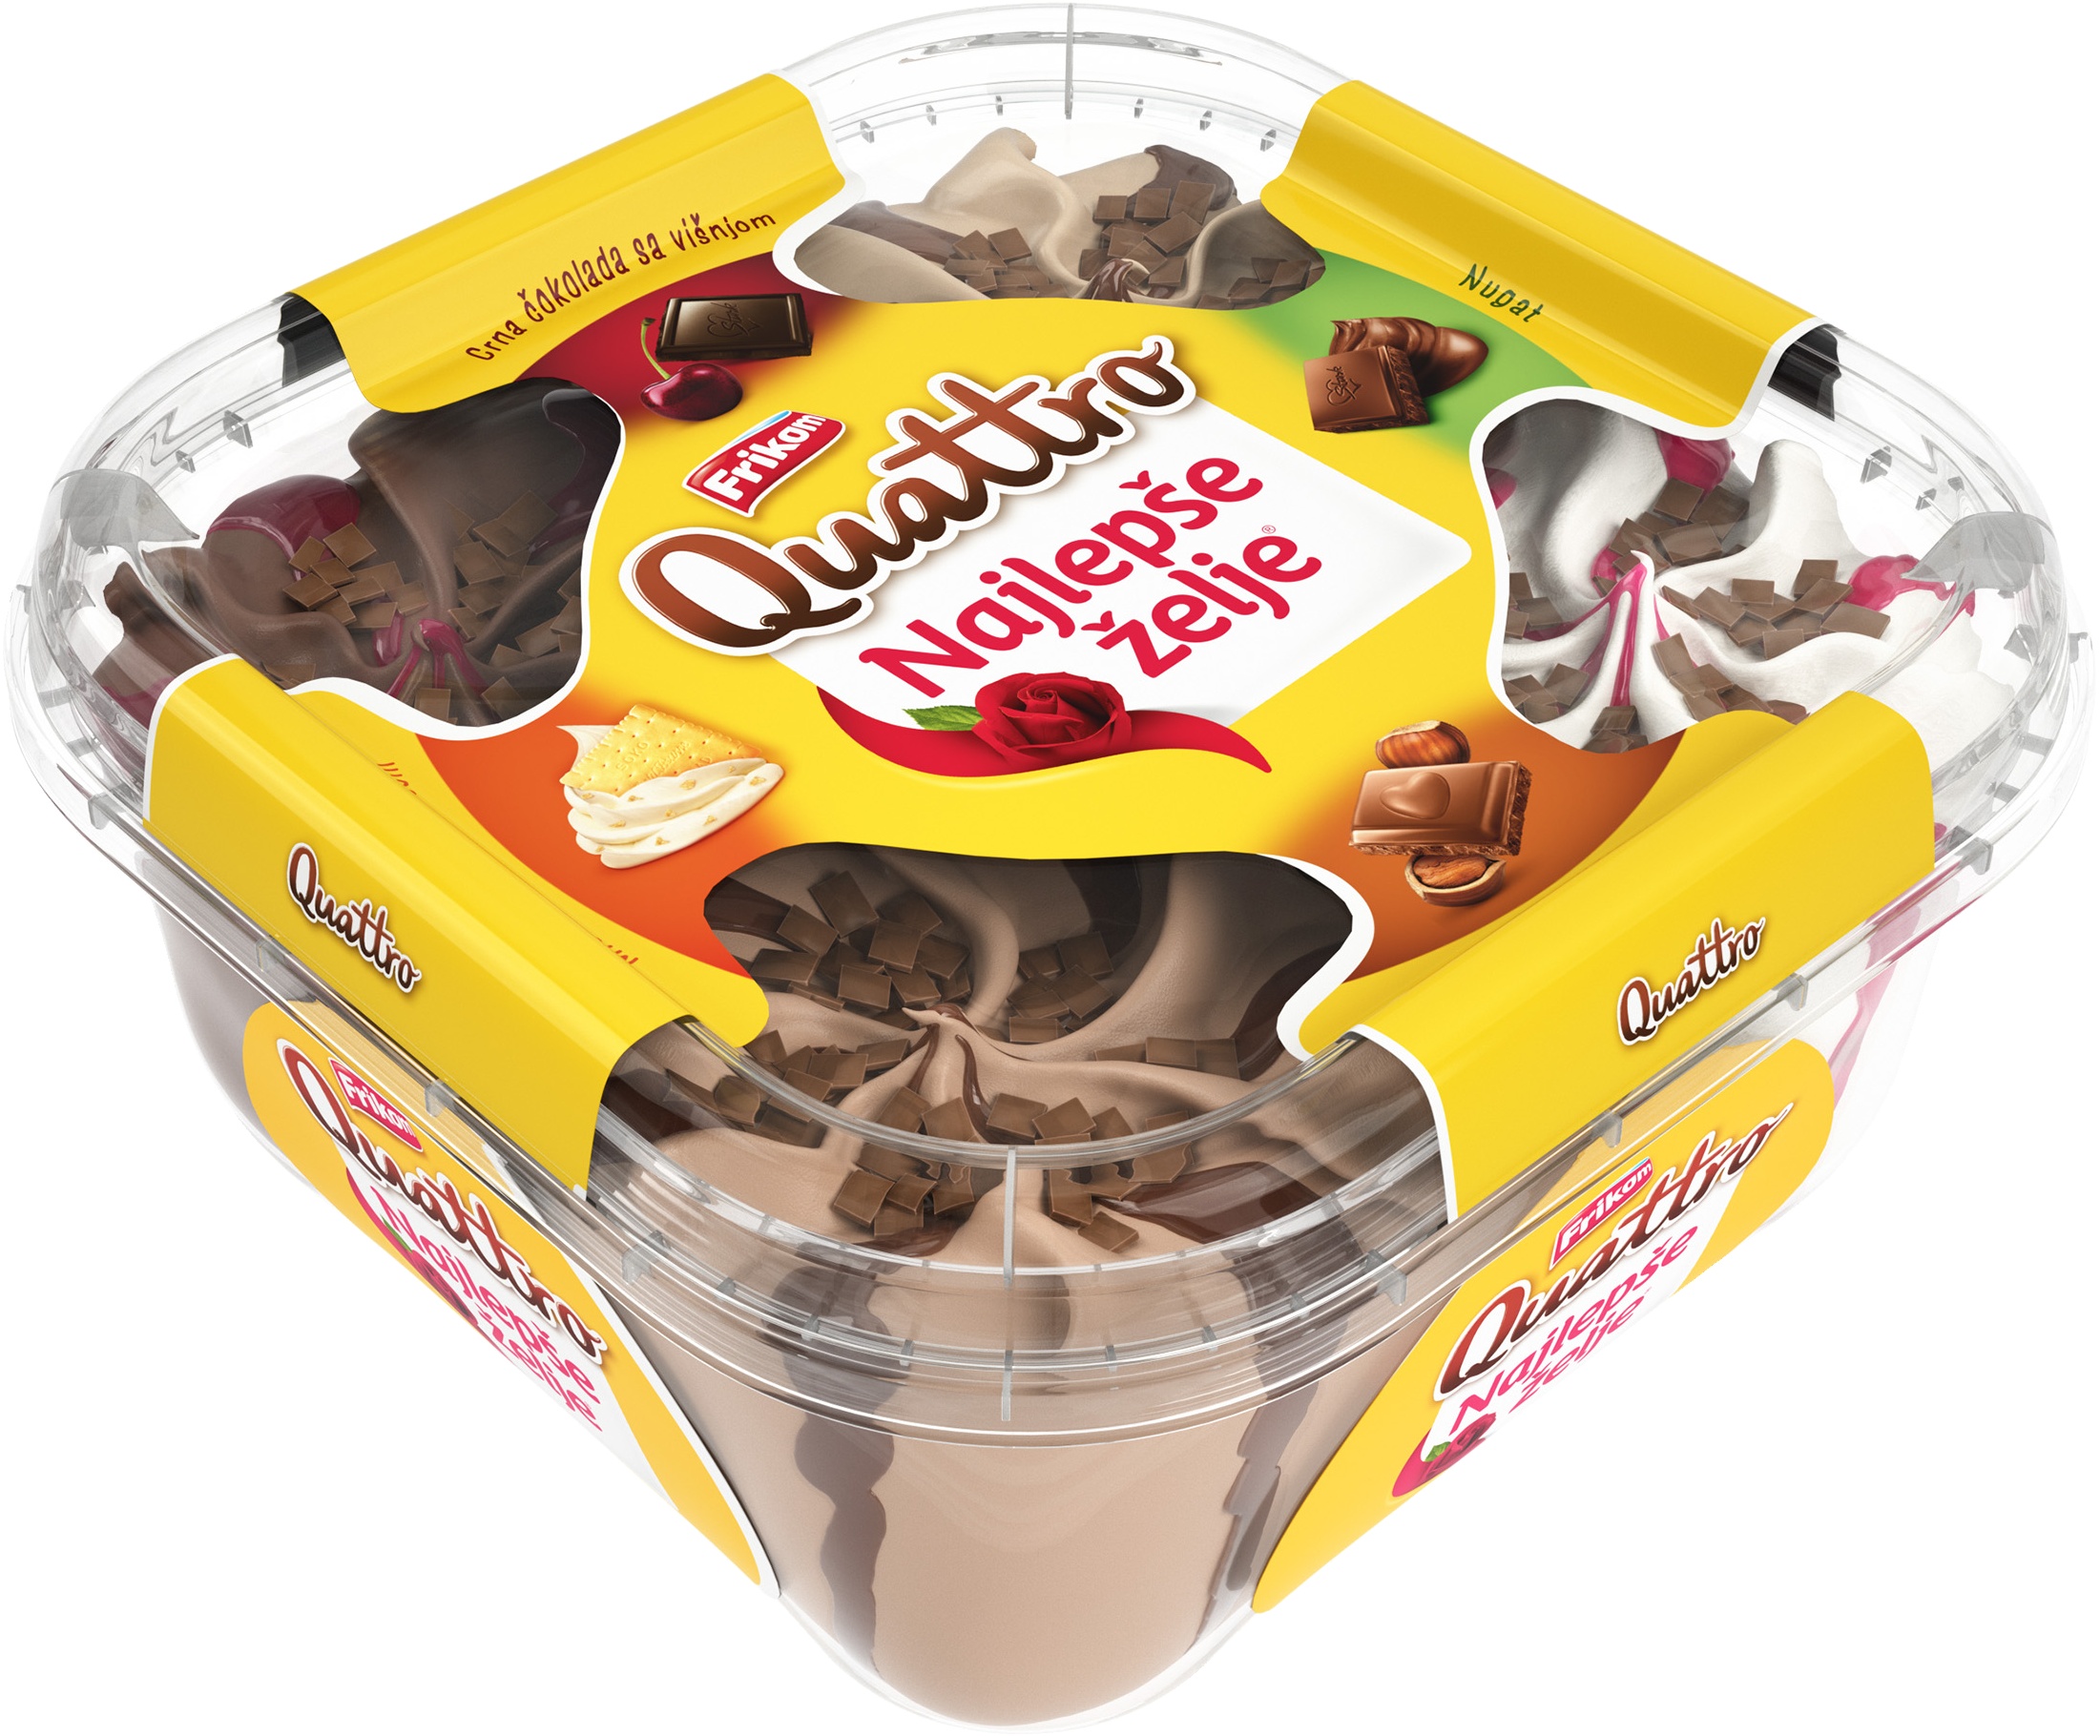 Slika za Sladoled najlepse želje Quattro 1600ml